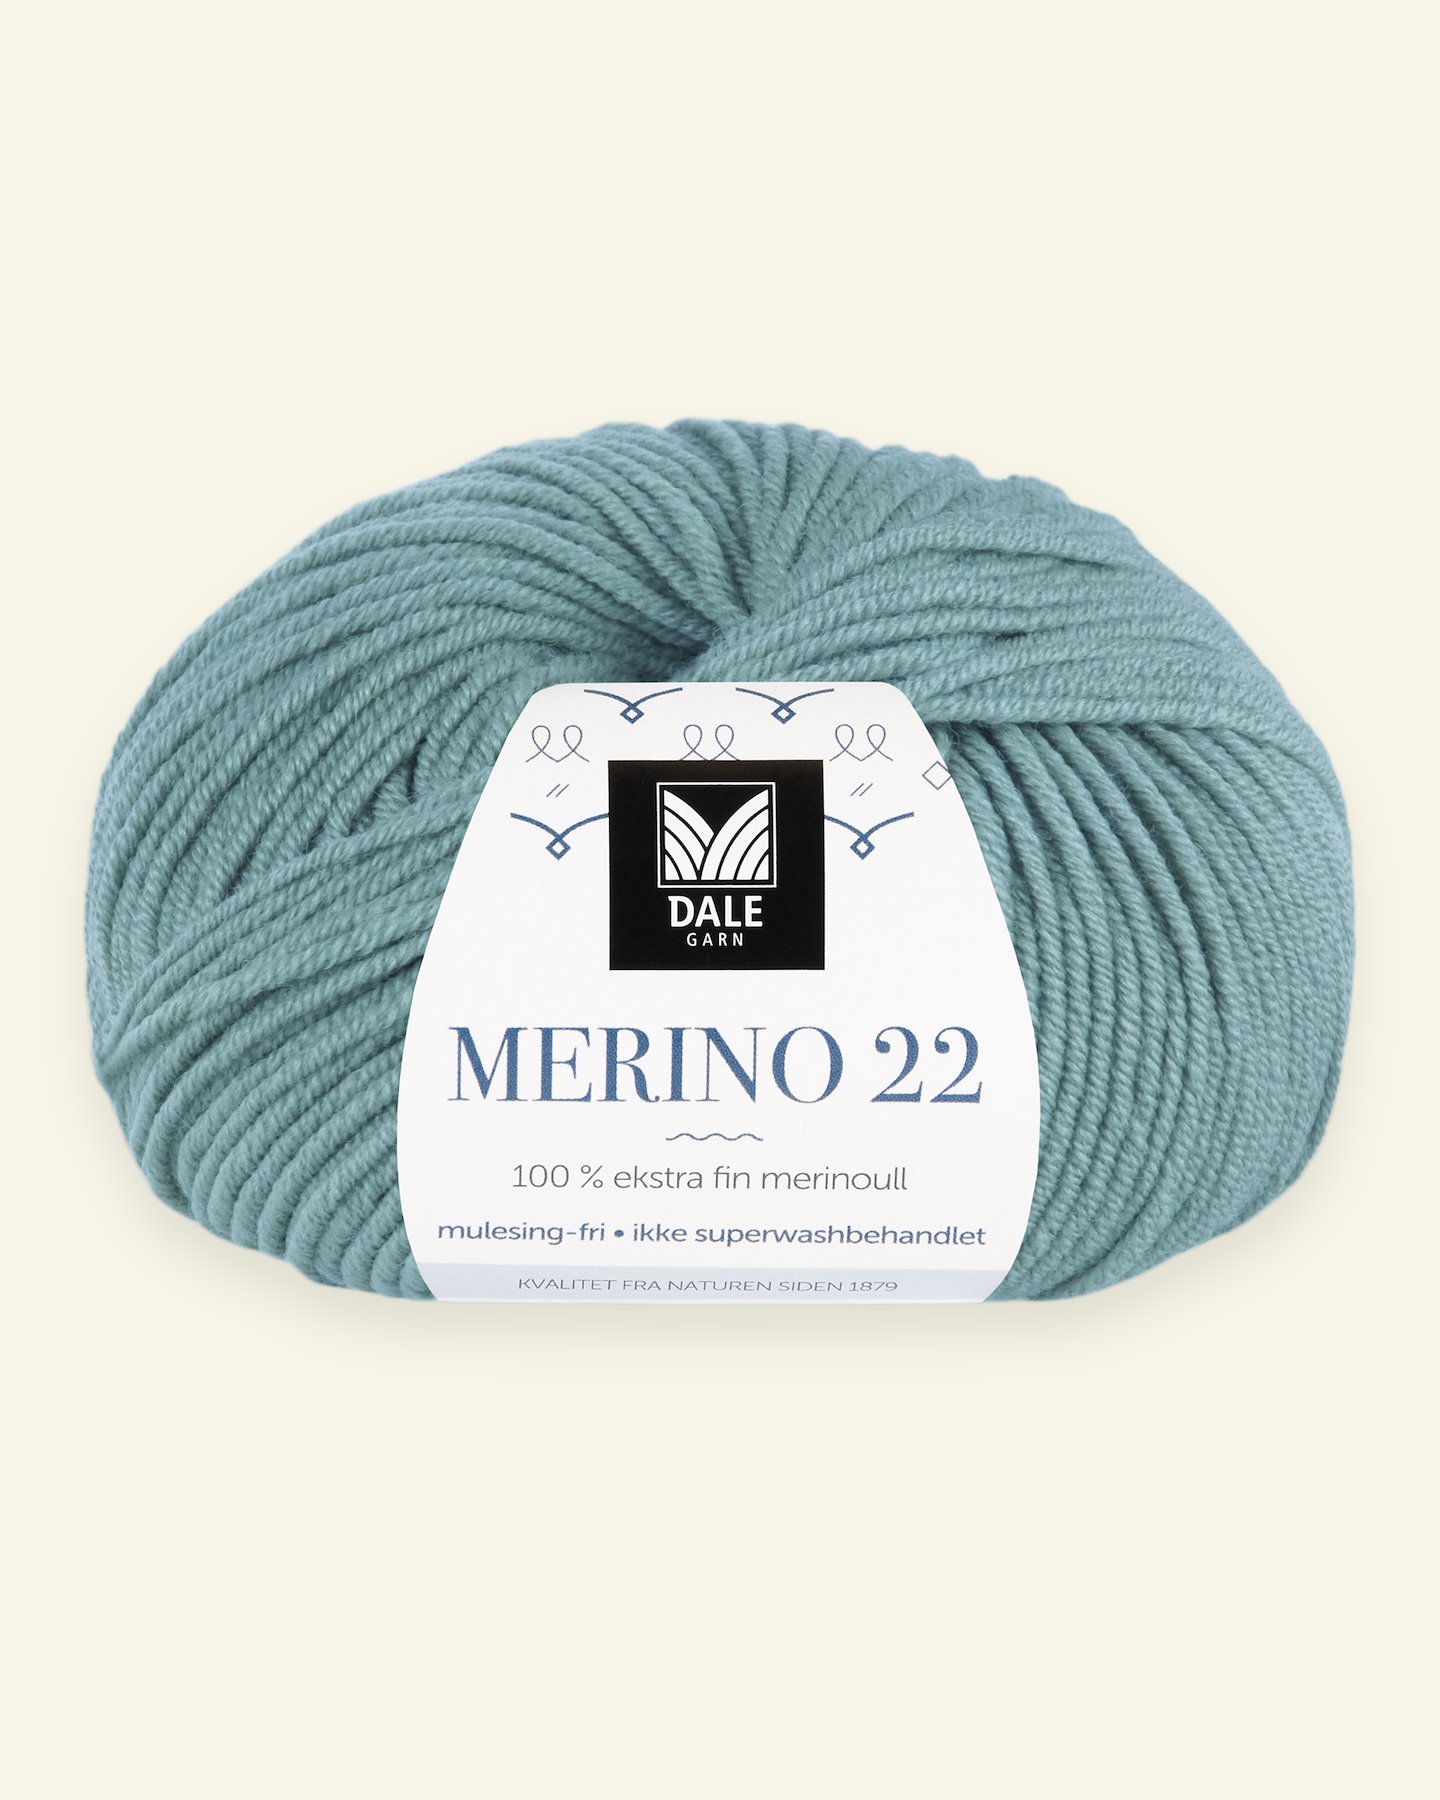 Dale Garn, 100% ekstra fint merinogarn "Merino 22", Aquagrønn (2015) 90000376_pack